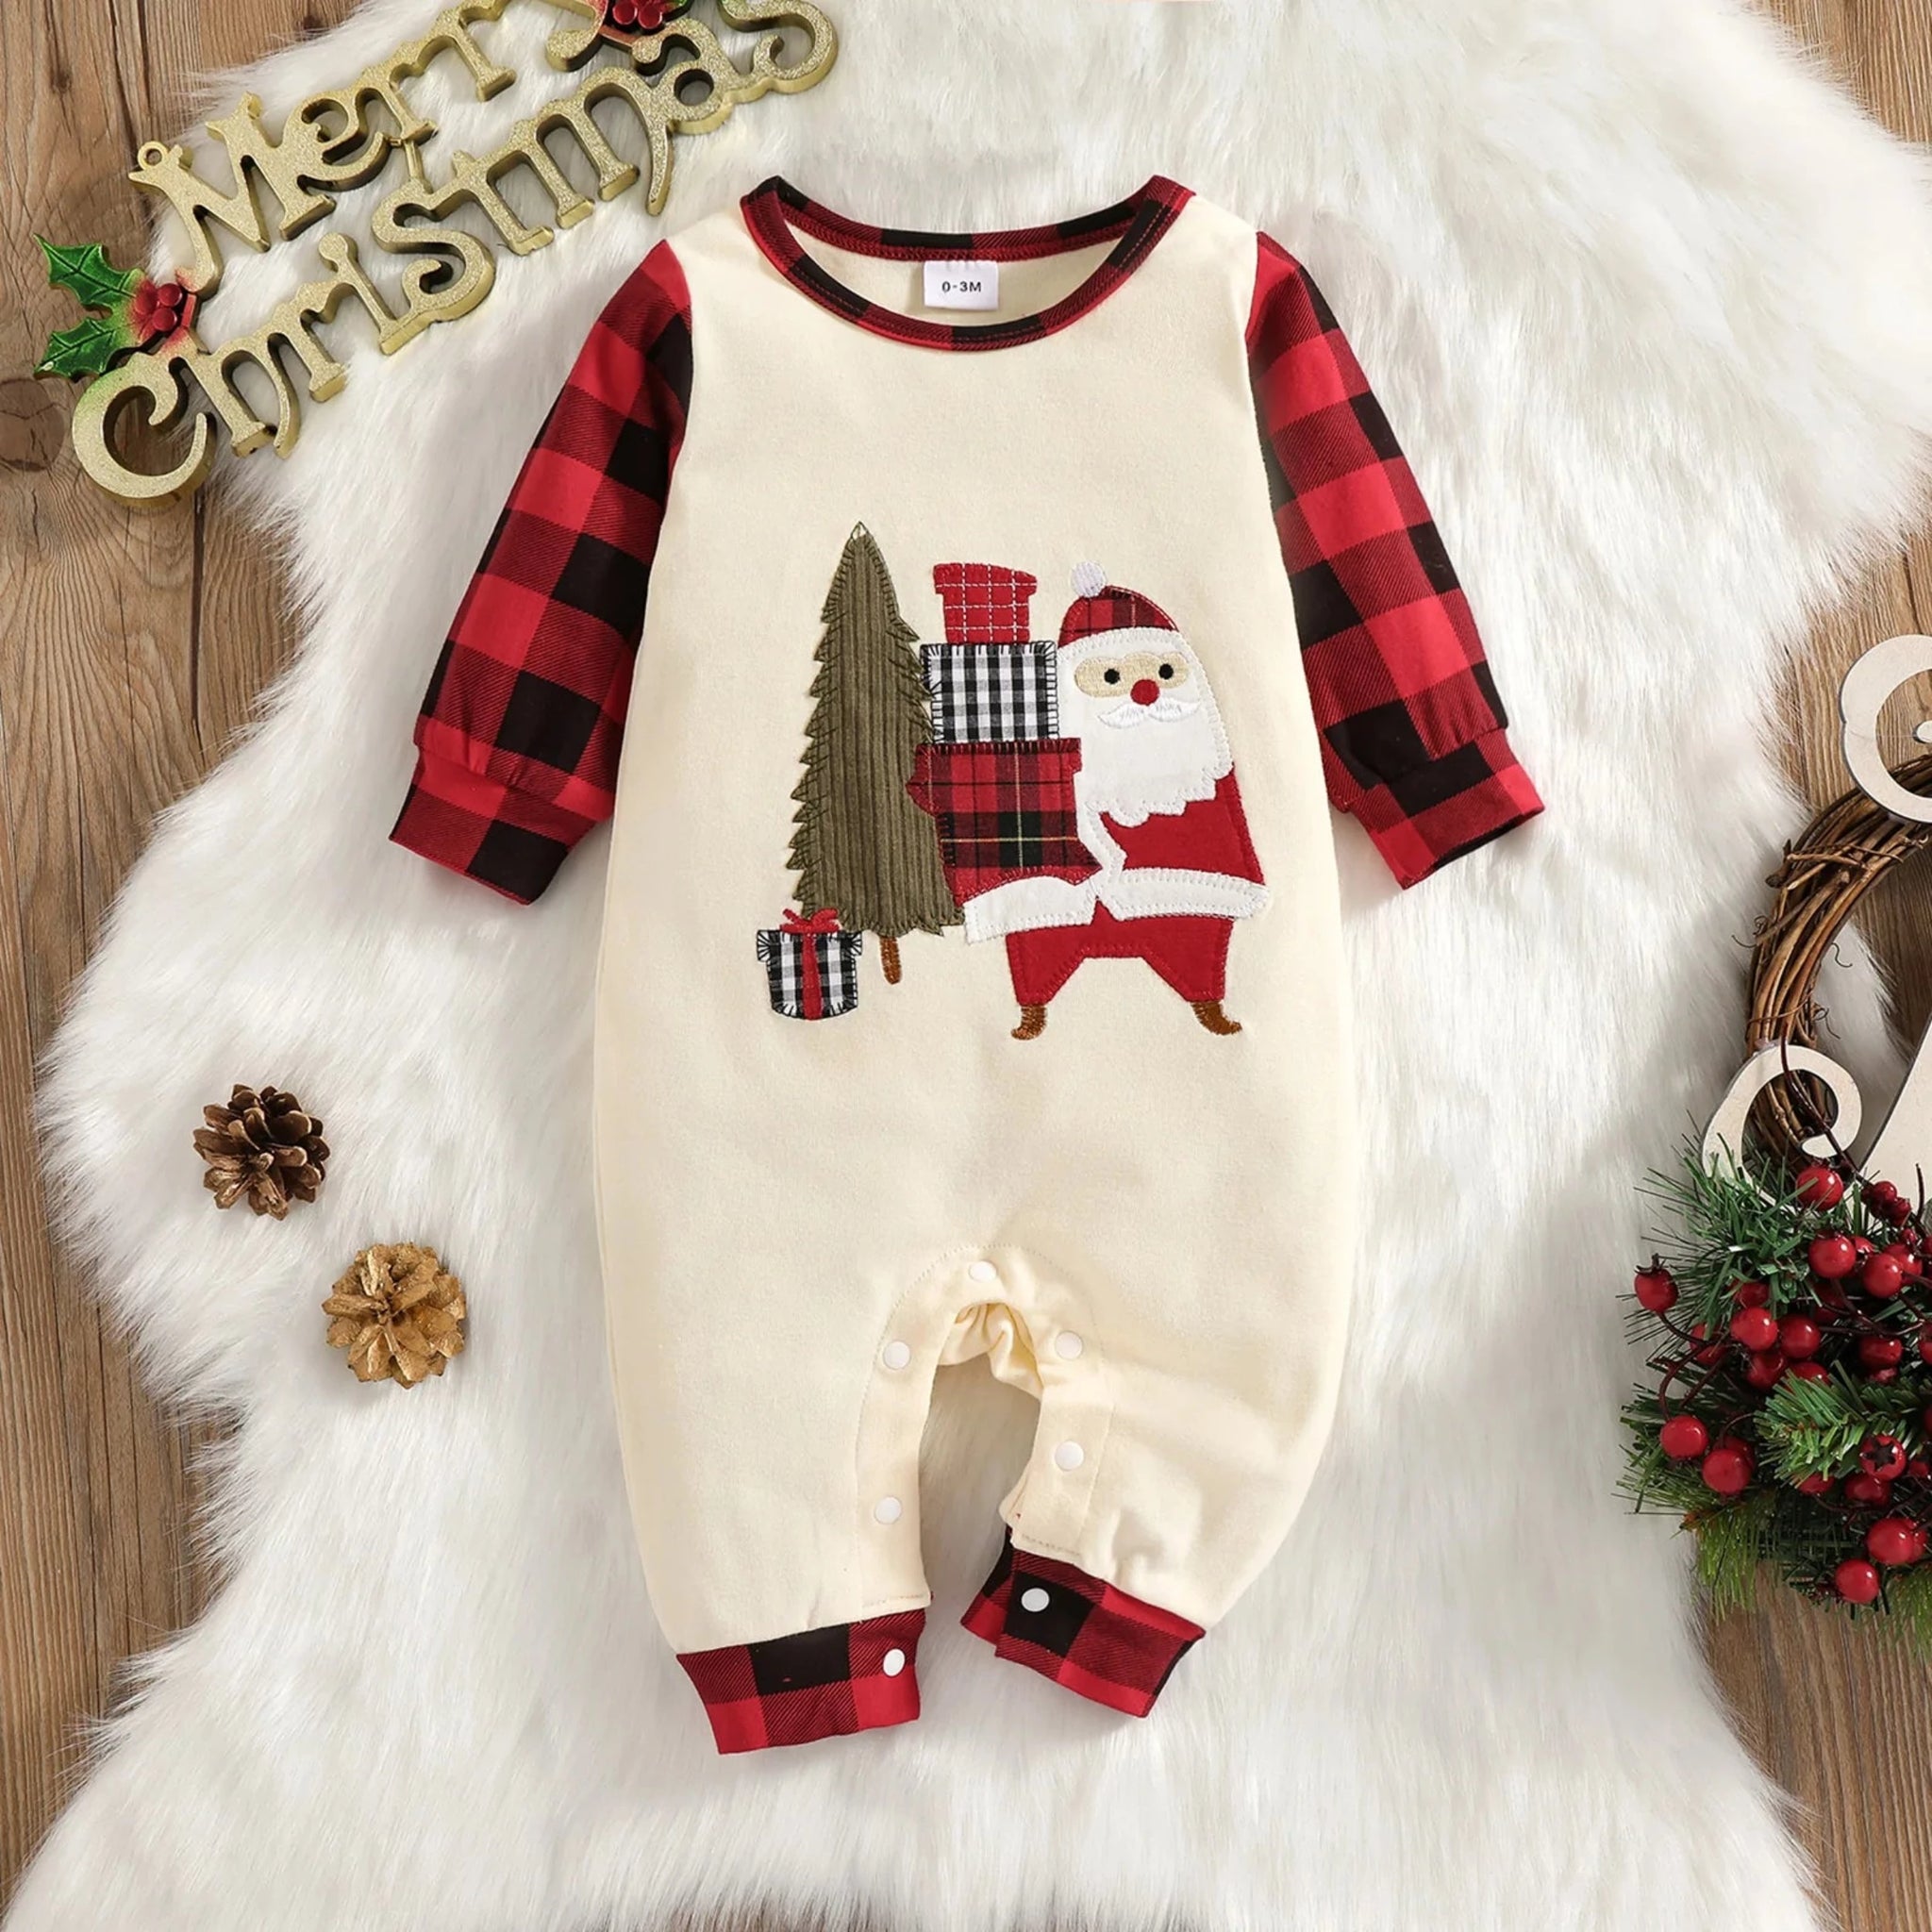 Pijama navideña de bebé estampado arbolito y santa